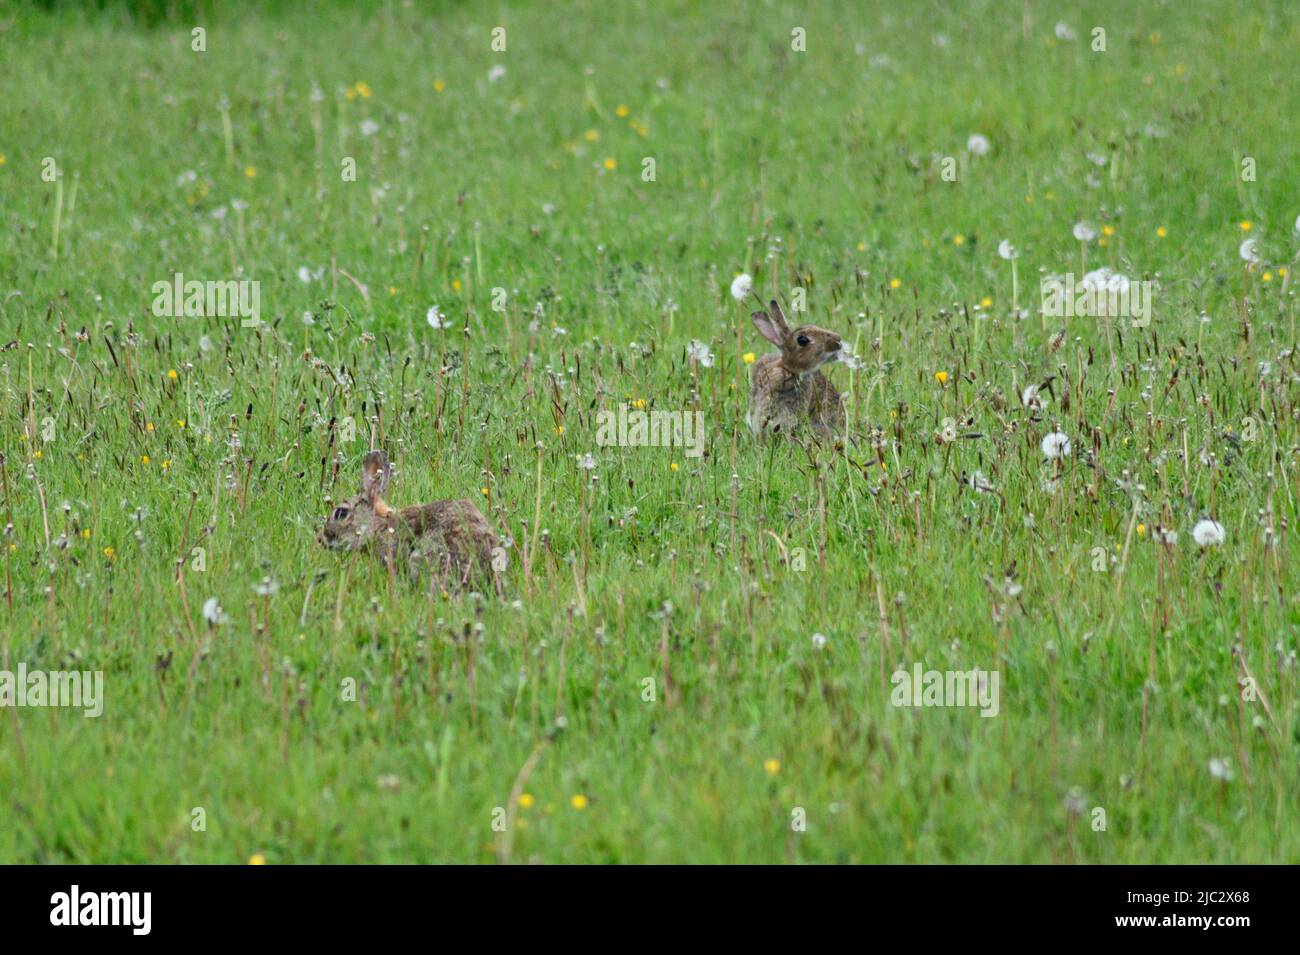 Conigli selvatici (Oryctolagus cuniculus) in un prato selvatico Port Issac Cornovaglia Inghilterra regno unito. Coniglio che mangia semi di dente di leone. Foto Stock